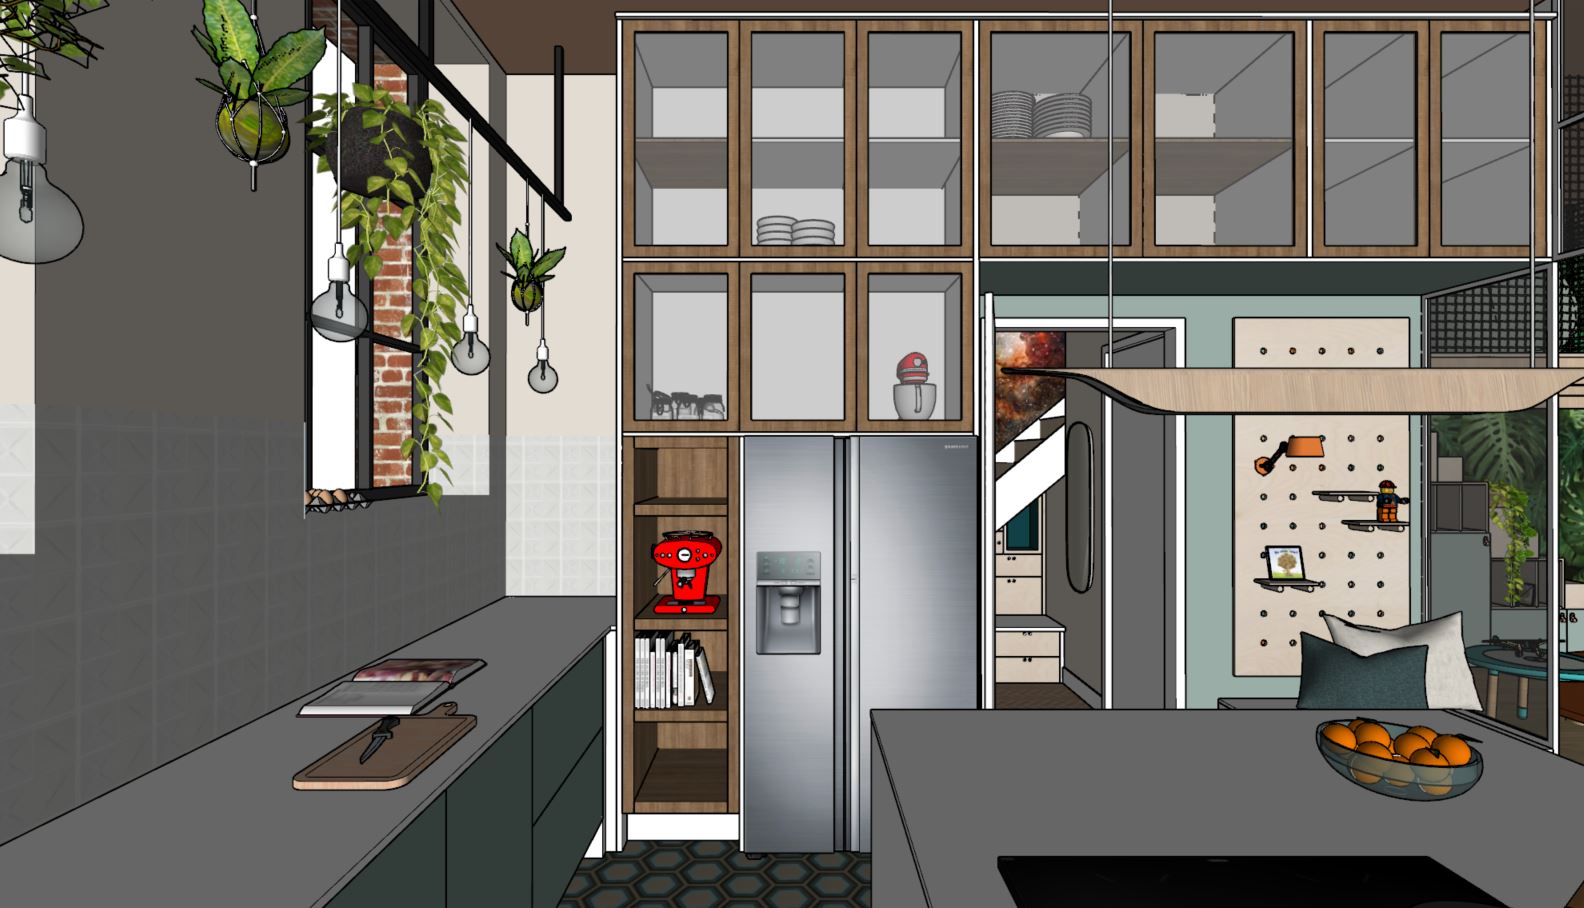 3D maatwerkontwerp voor XXL servieskast in de keuken voor een nieuwbouwwoning op Enka in Ede